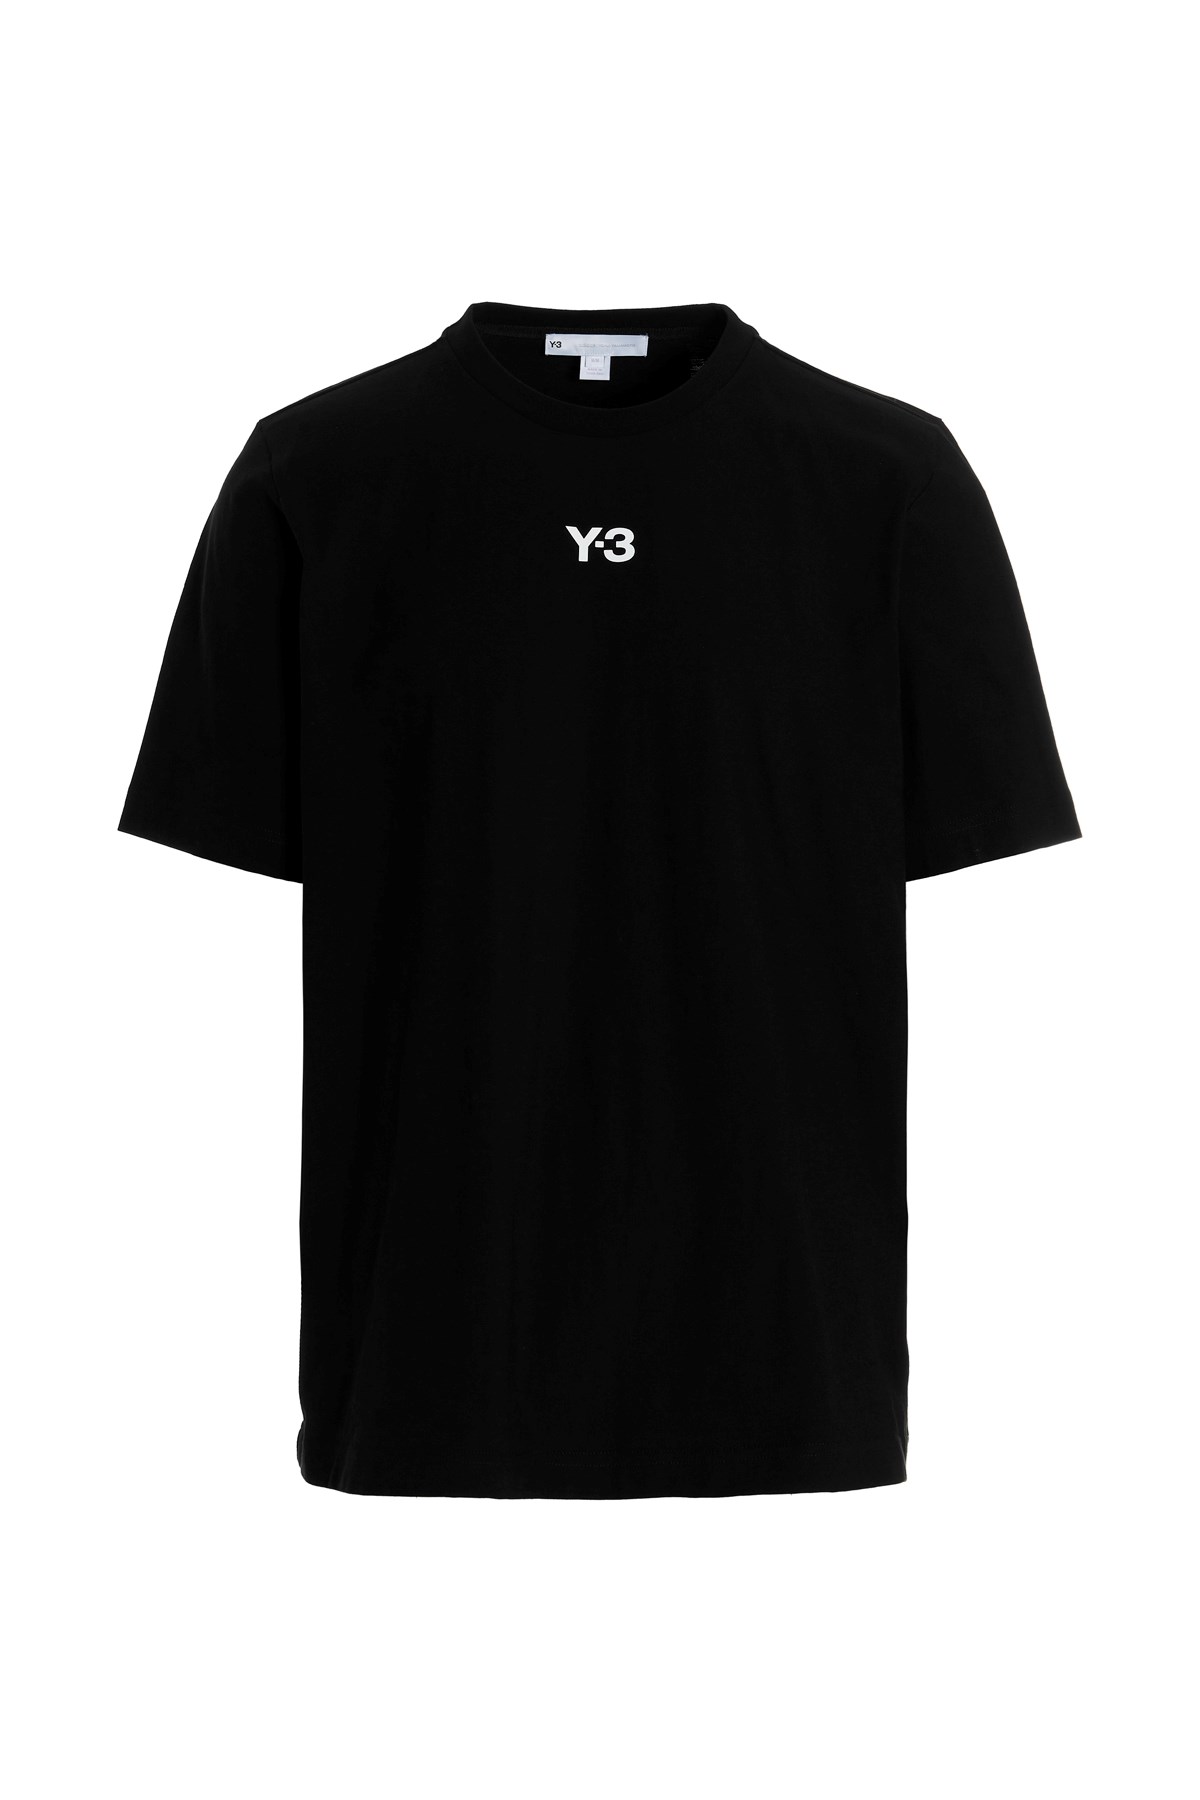 Y-3 Logo Print T-Shirt